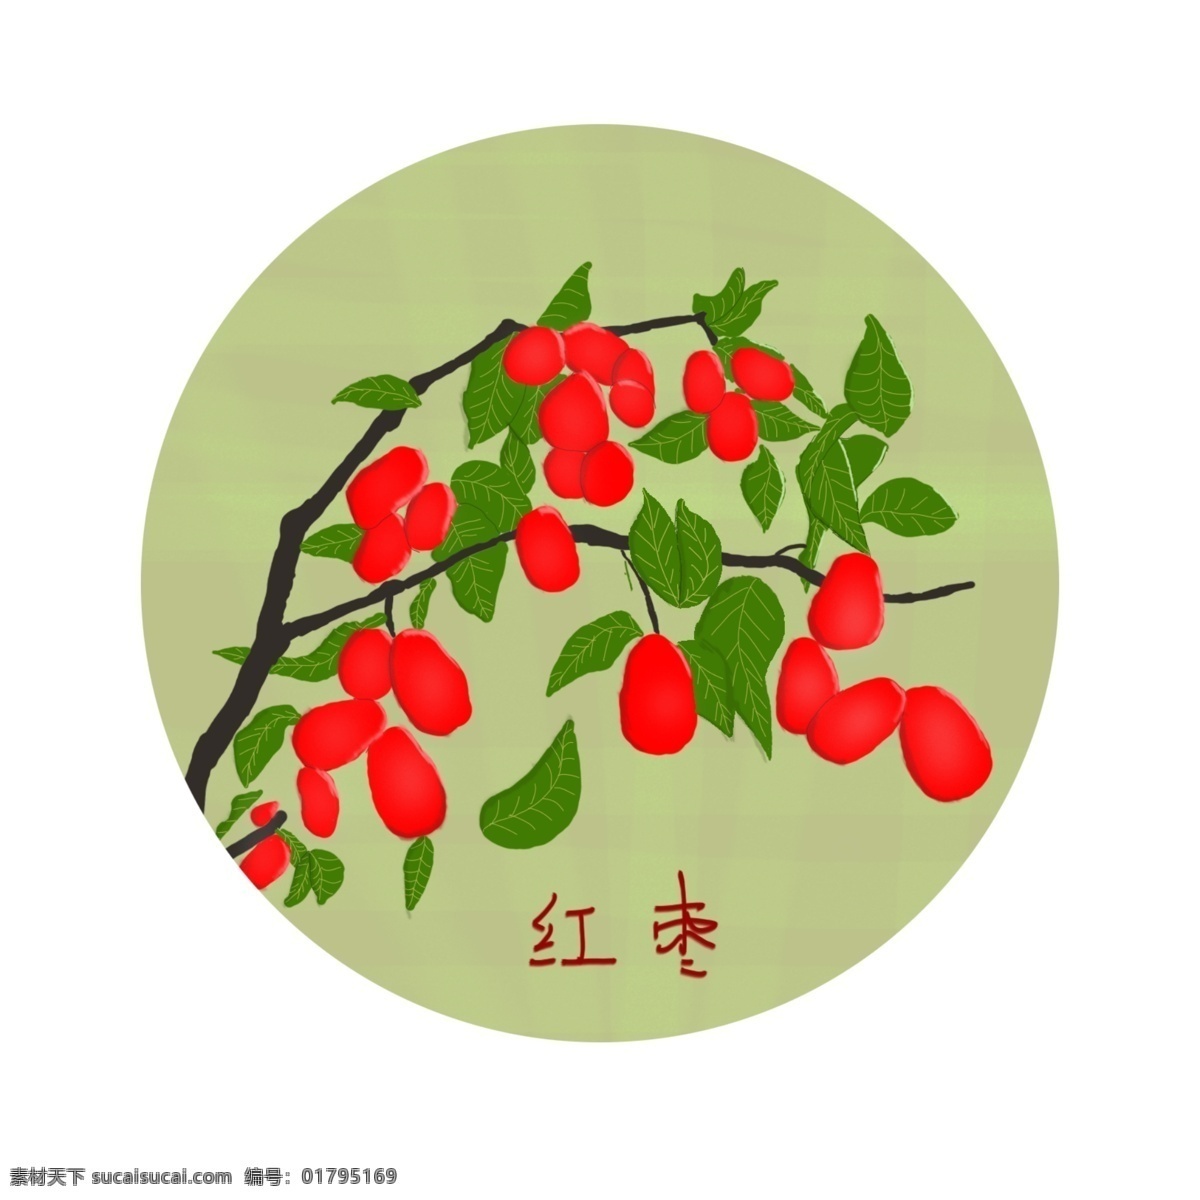 手绘红枣 手绘 红枣 绿叶 树枝 红色 生物世界 树木树叶